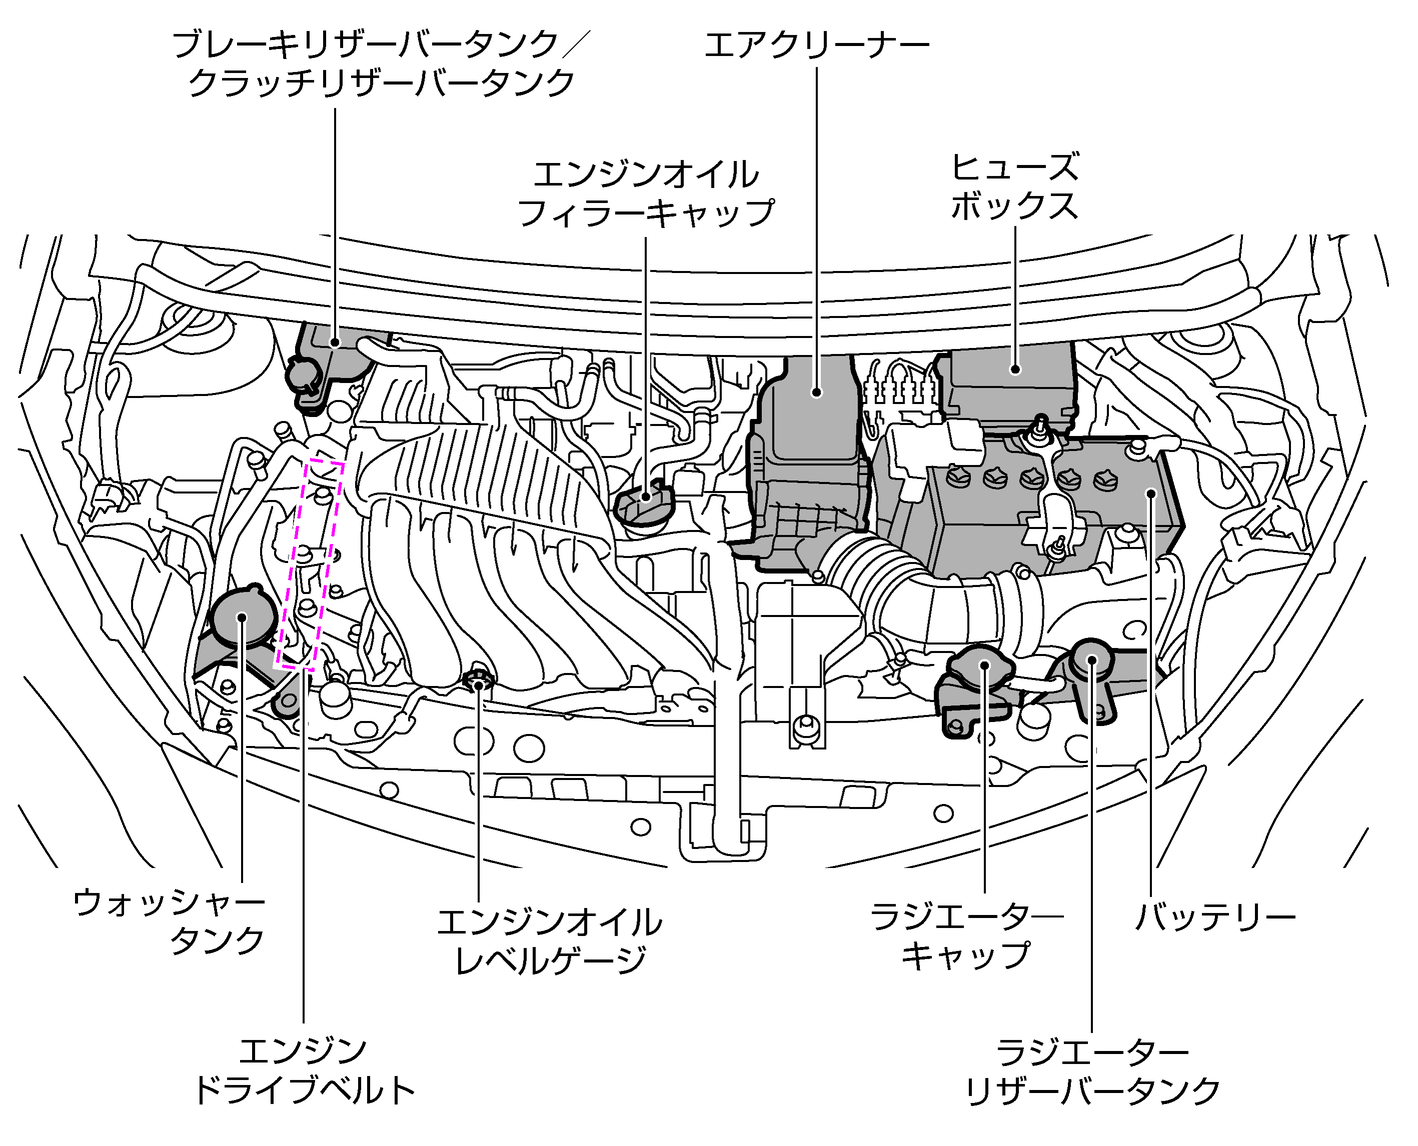 エンジンルーム内の配置図 Hr16deエンジン搭載車